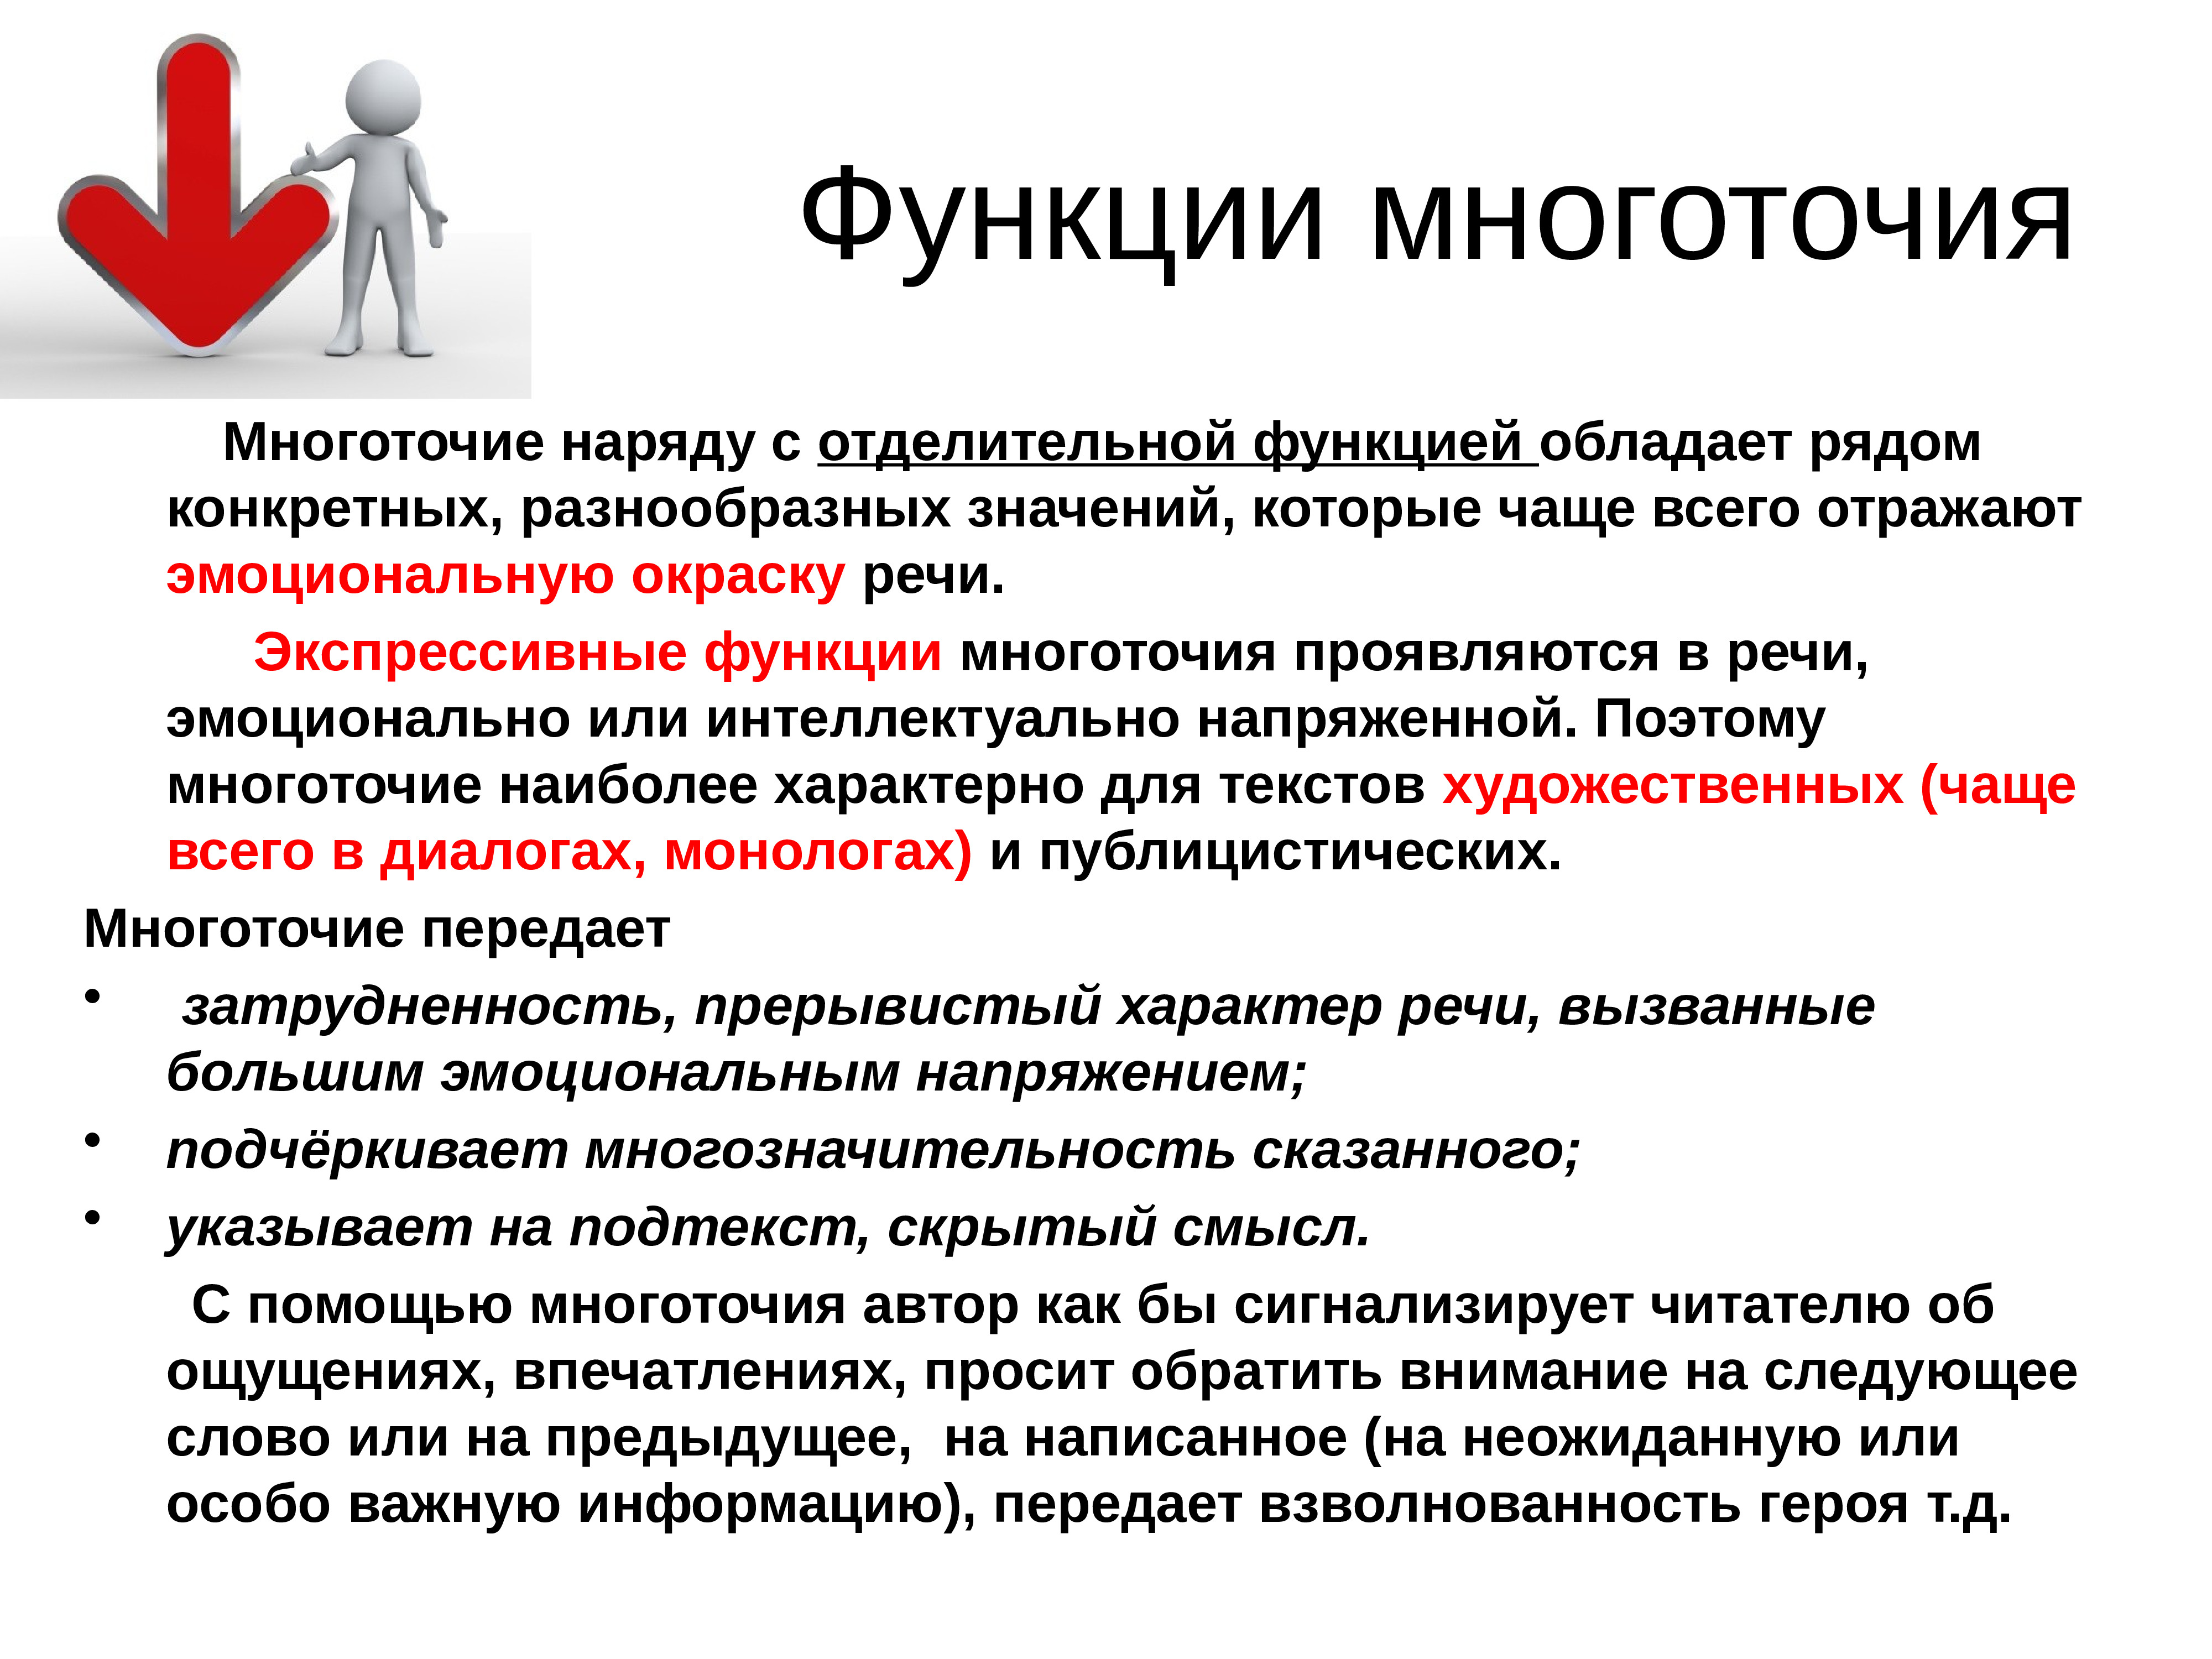 Какую роль подробное описание. Роль многоточия в тексте. Функции многоточия. Многоточие функции в тексте. Функции многоточия в русском языке.